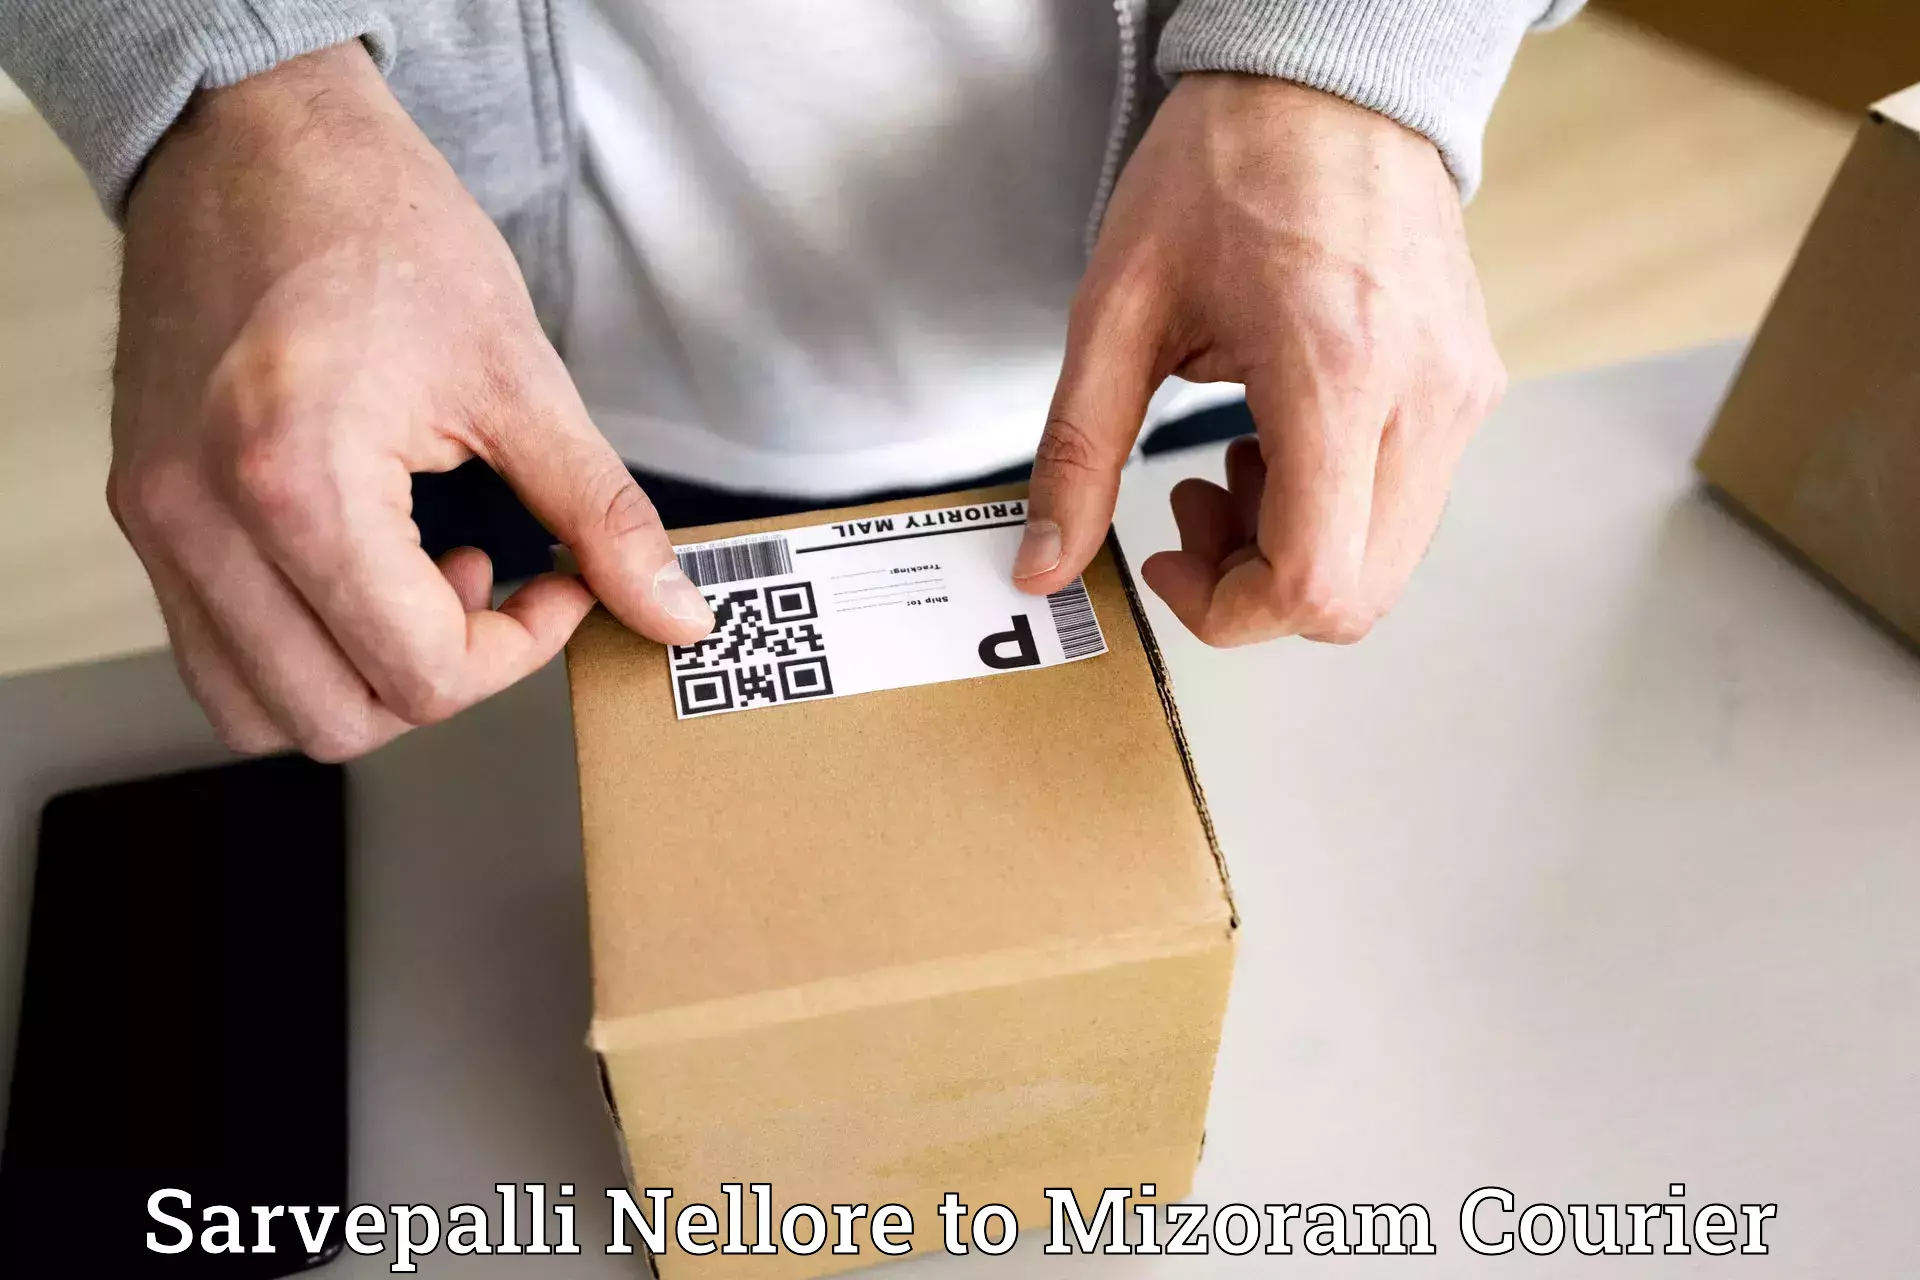 Nationwide courier service Sarvepalli Nellore to NIT Aizawl